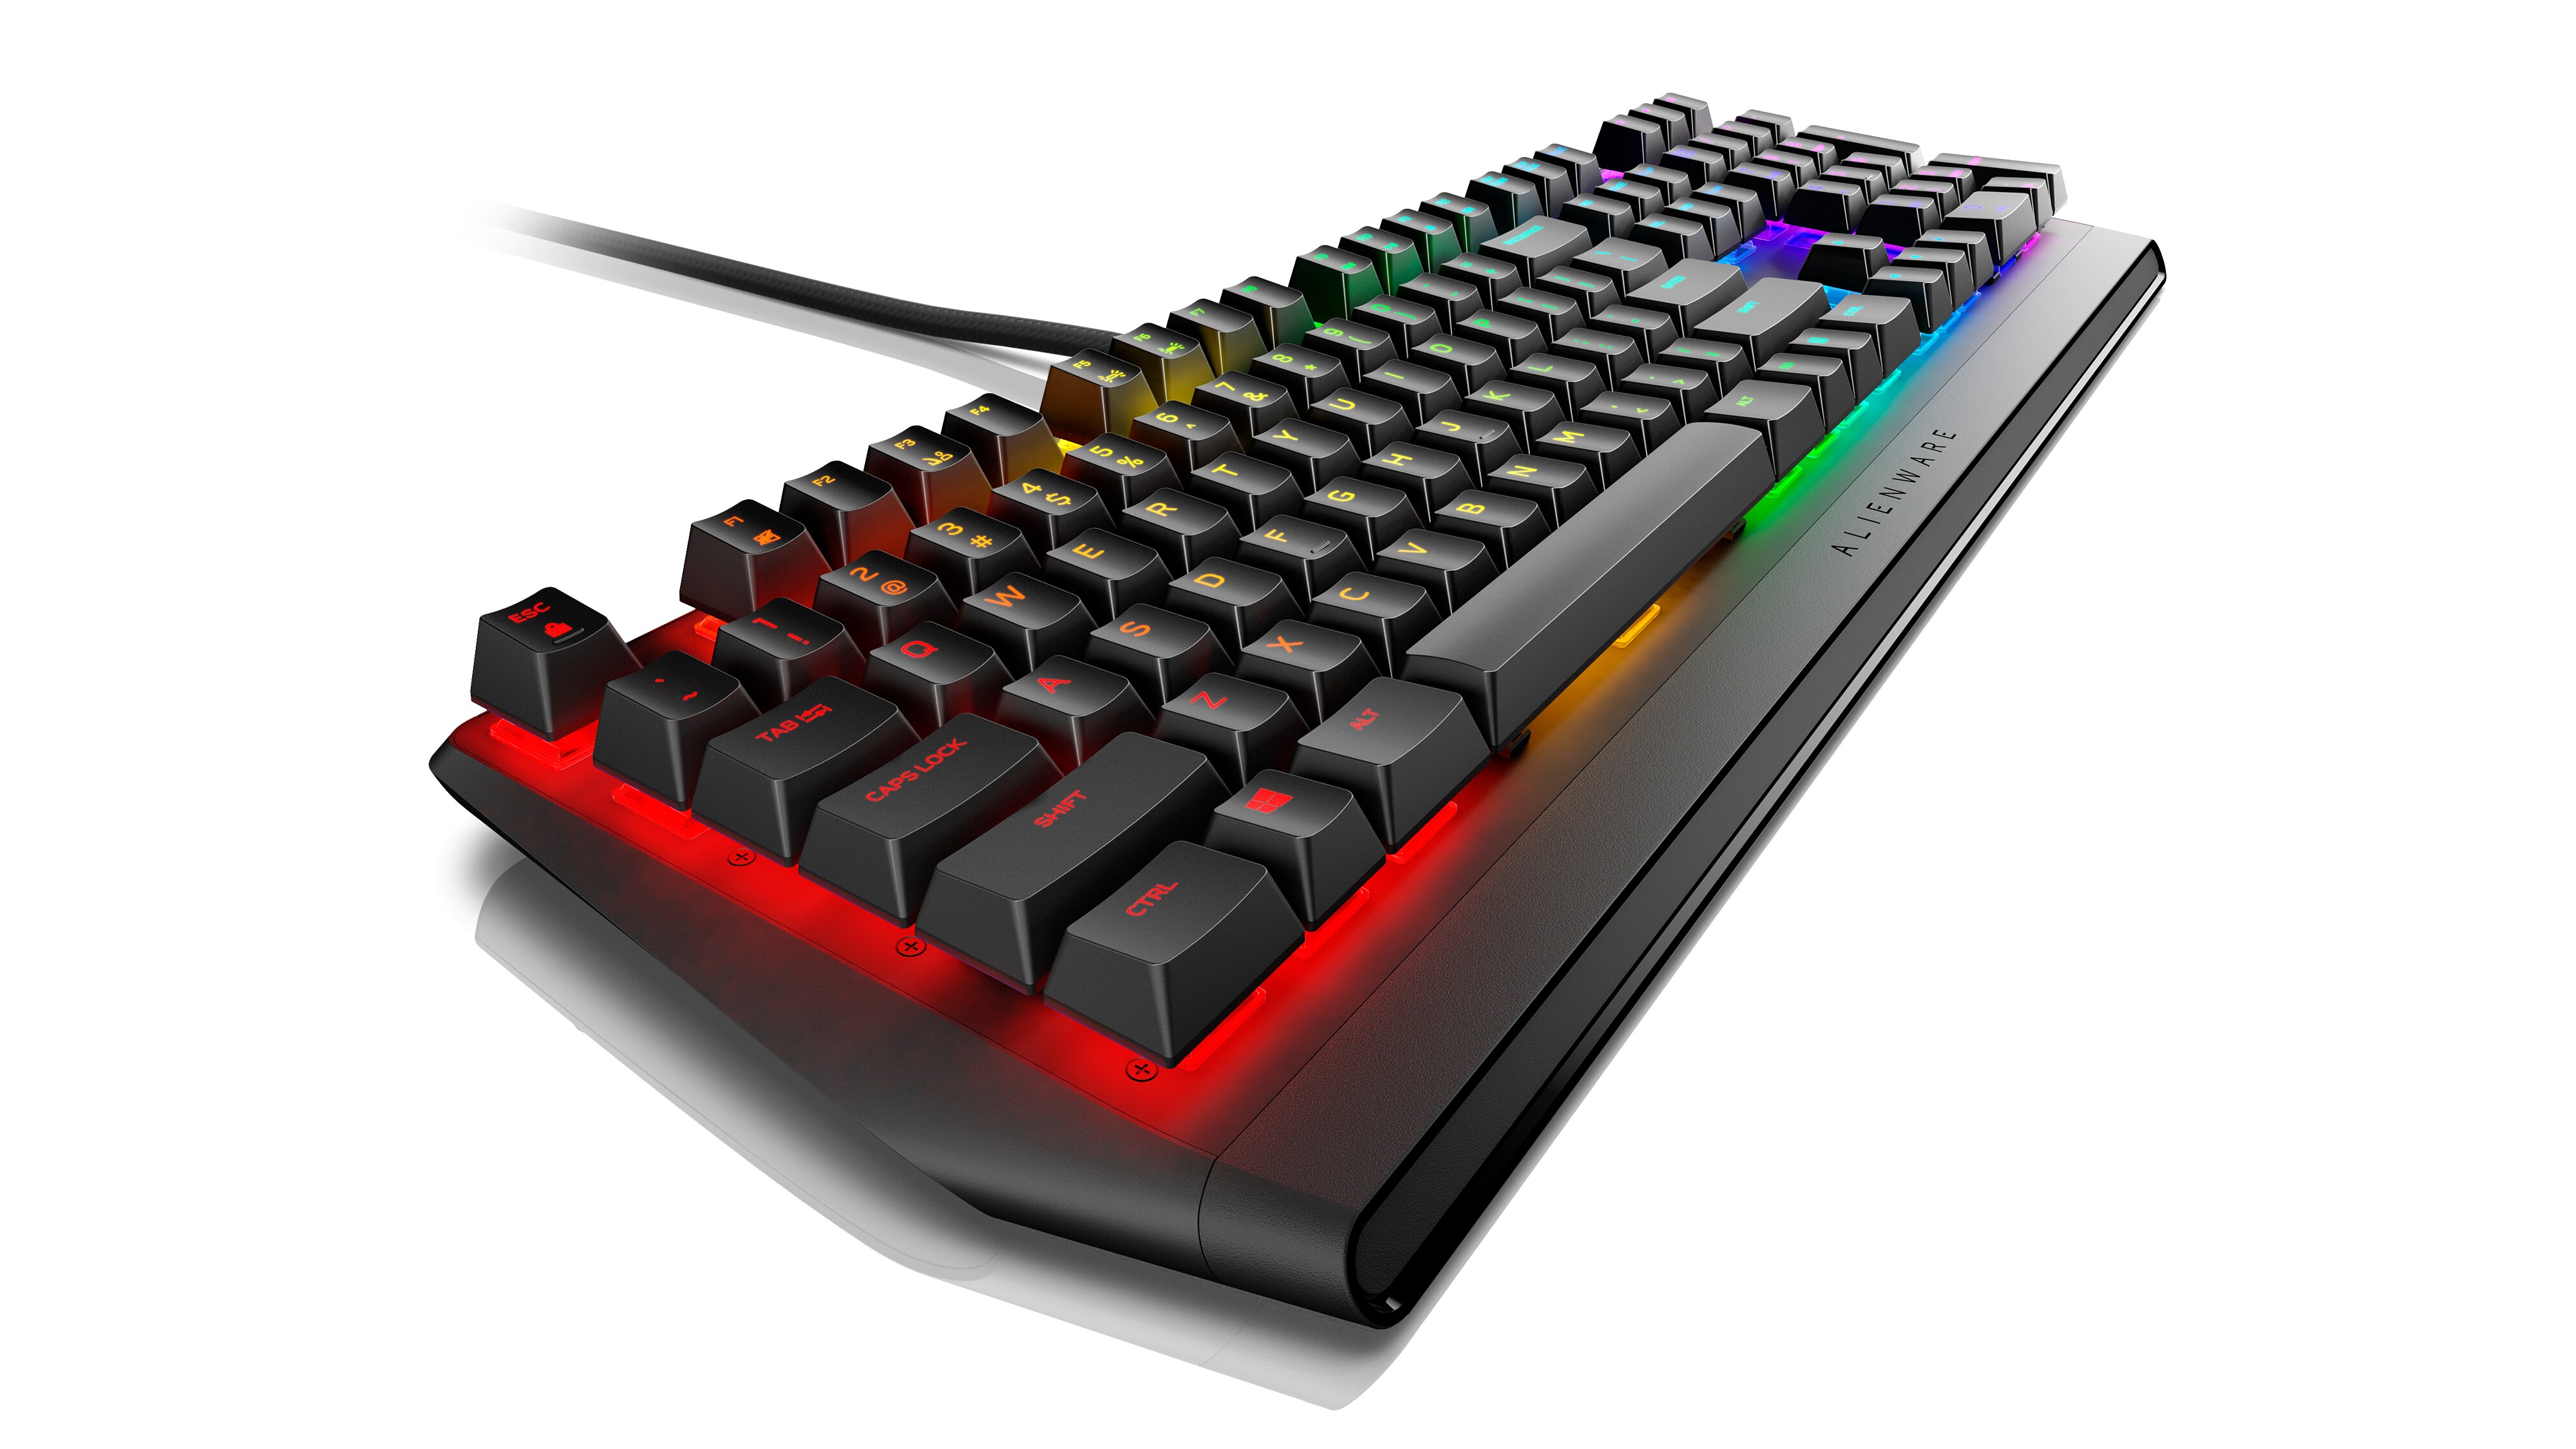 Alienware RGB Mechanical Gaming Keyboard | AW410K